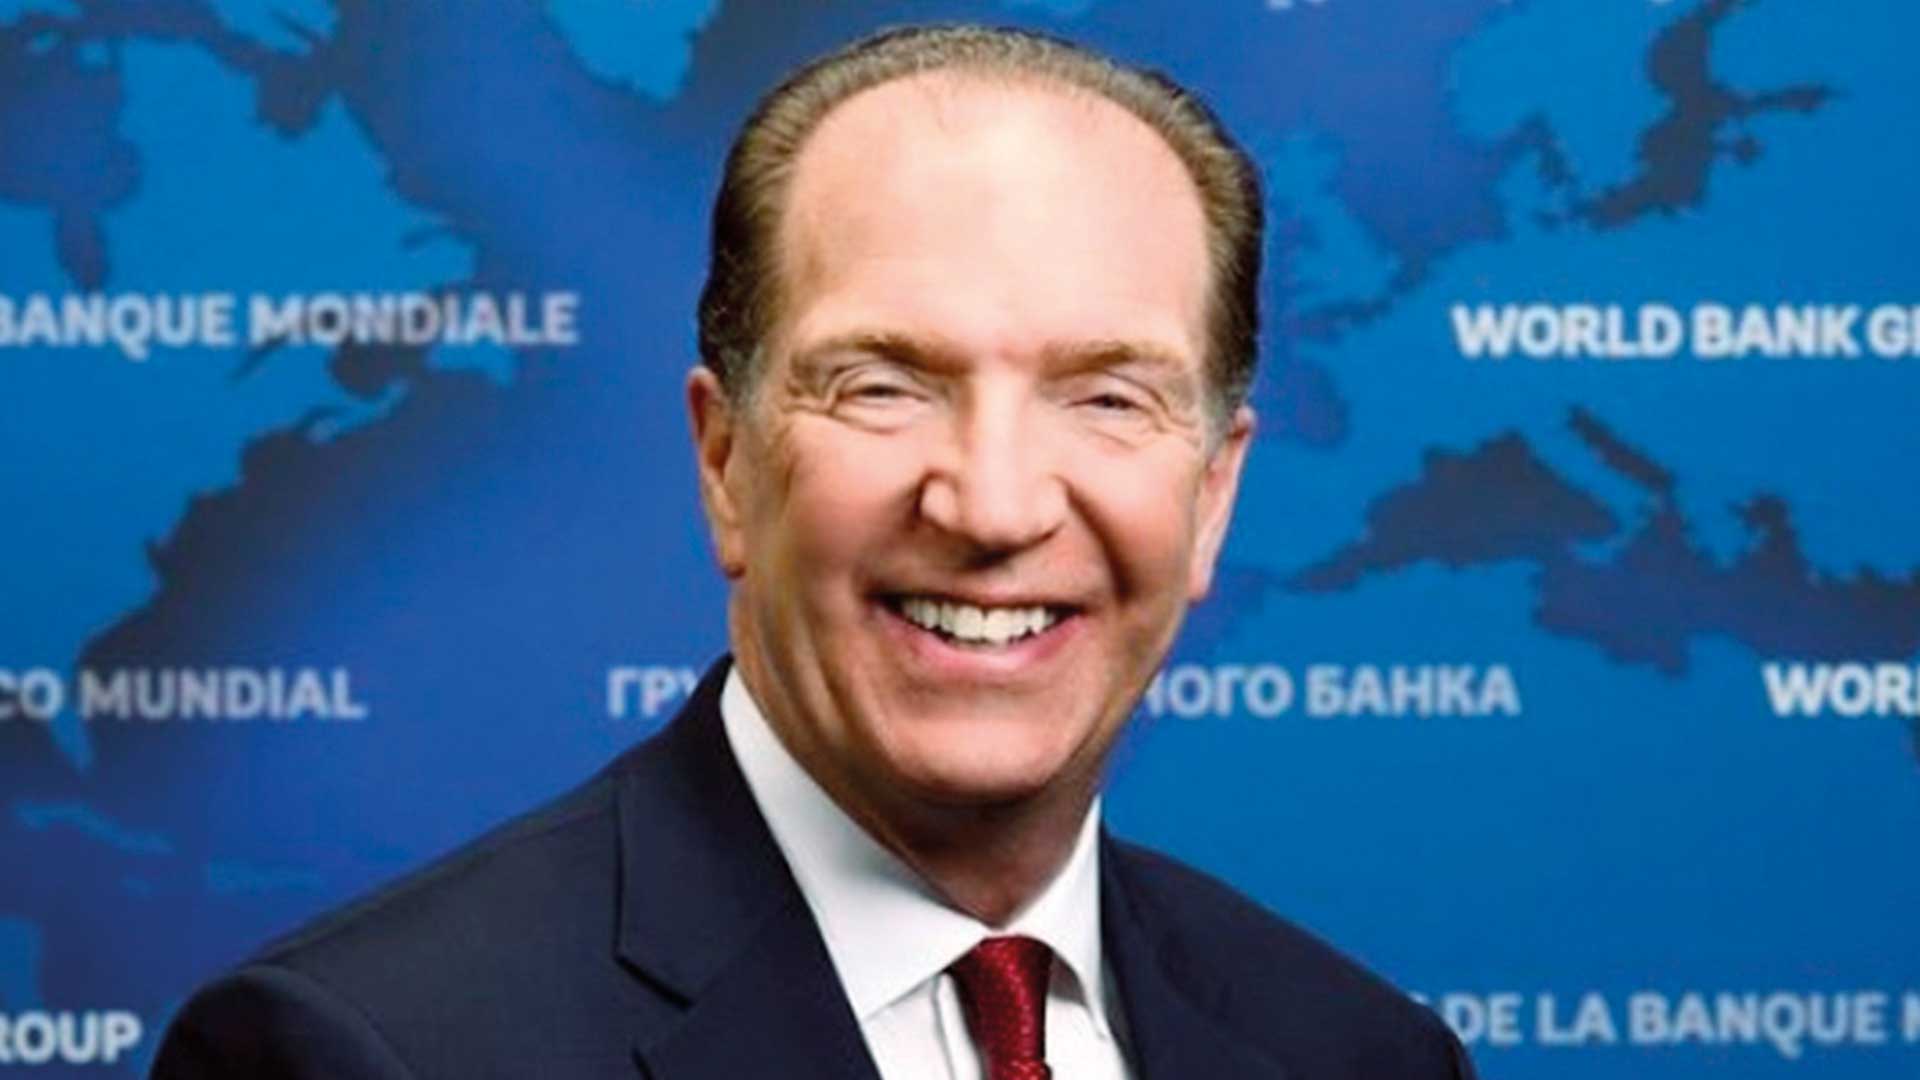 Banque mondiale: David Malpass, nouveau président